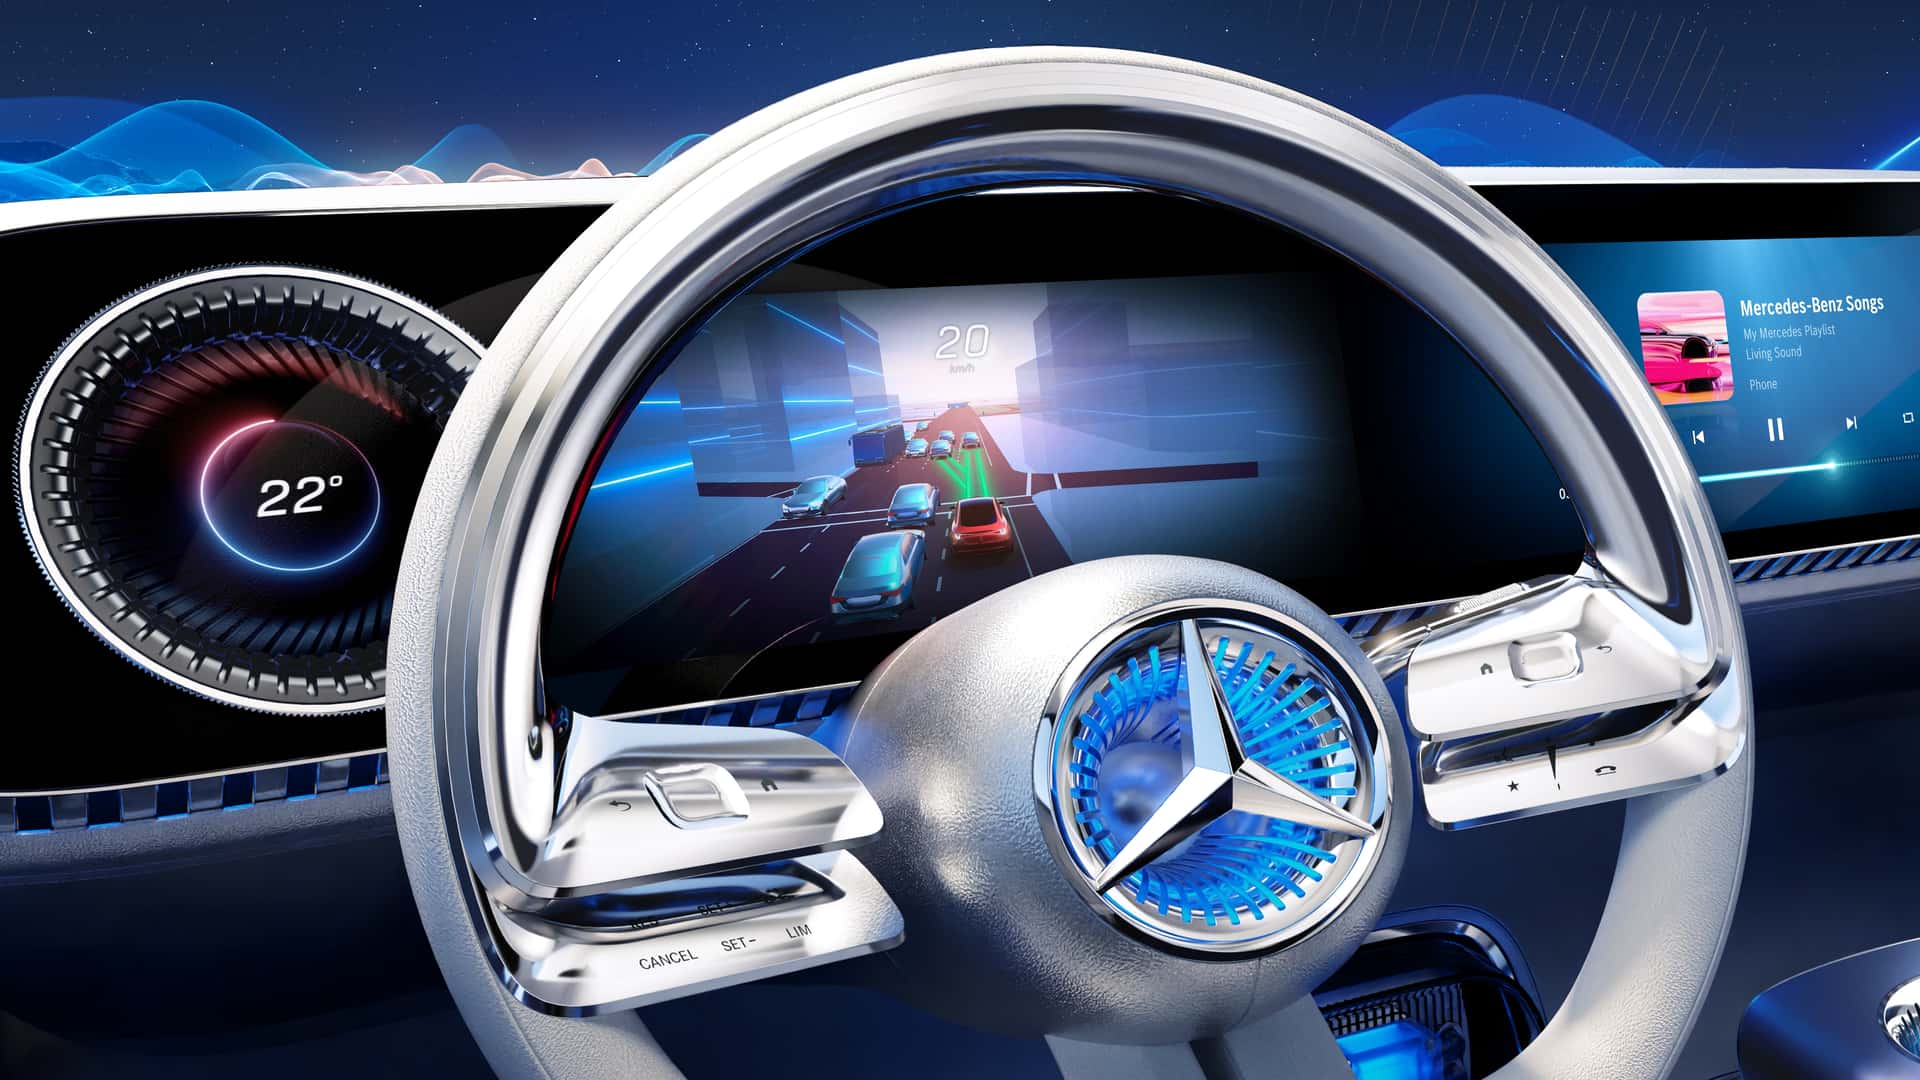 مرسيدس تكشف عن الجيل الجديد من نظام التشغيل لسياراتها بتقنيات مبتكرة جديدة 3